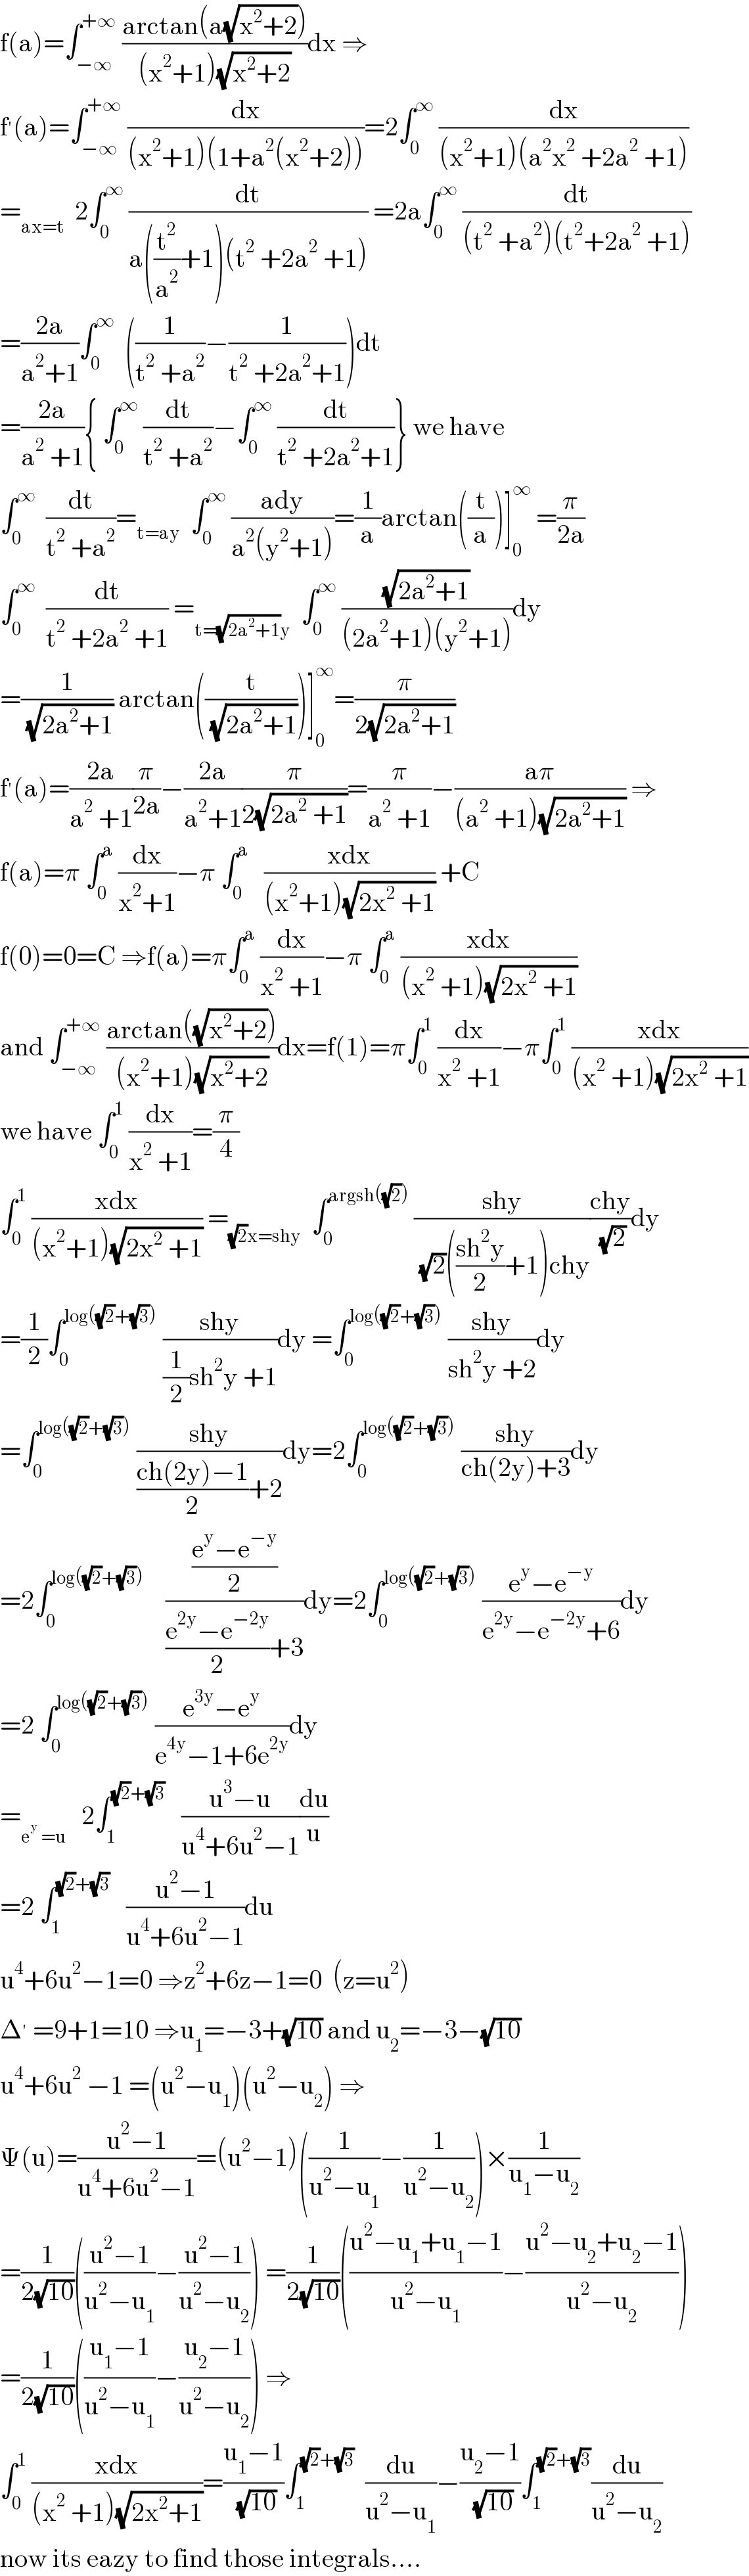 f(a)=∫_(−∞) ^(+∞)  ((arctan(a(√(x^2 +2))))/((x^2 +1)(√(x^2 +2))))dx ⇒  f^′ (a)=∫_(−∞) ^(+∞)  (dx/((x^2 +1)(1+a^2 (x^2 +2))))=2∫_0 ^∞  (dx/((x^2 +1)(a^2 x^2  +2a^2  +1)))  =_(ax=t)   2∫_0 ^∞  (dt/(a((t^2 /a^2 )+1)(t^2  +2a^2  +1))) =2a∫_0 ^∞  (dt/((t^2  +a^2 )(t^2 +2a^2  +1)))  =((2a)/(a^2 +1))∫_0 ^∞   ((1/(t^2  +a^2 ))−(1/(t^2  +2a^2 +1)))dt  =((2a)/(a^2  +1)){ ∫_0 ^∞  (dt/(t^2  +a^2 ))−∫_0 ^∞  (dt/(t^2  +2a^2 +1))} we have  ∫_0 ^∞   (dt/(t^2  +a^2 ))=_(t=ay)   ∫_0 ^∞  ((ady)/(a^2 (y^2 +1)))=(1/a)arctan((t/a))]_0 ^∞  =(π/(2a))  ∫_0 ^∞   (dt/(t^2  +2a^2  +1)) =_(t=(√(2a^2 +1))y)   ∫_0 ^∞  ((√(2a^2 +1))/((2a^2 +1)(y^2 +1)))dy  =(1/( (√(2a^2 +1)))) arctan((t/( (√(2a^2 +1)))))]_0 ^∞ =(π/(2(√(2a^2 +1))))  f^′ (a)=((2a)/(a^2  +1))(π/(2a))−((2a)/(a^2 +1))(π/(2(√(2a^2  +1))))=(π/(a^2  +1))−((aπ)/((a^2  +1)(√(2a^2 +1)))) ⇒  f(a)=π ∫_0 ^a  (dx/(x^2 +1))−π ∫_0 ^a    ((xdx)/((x^2 +1)(√(2x^2  +1)))) +C  f(0)=0=C ⇒f(a)=π∫_0 ^a  (dx/(x^2  +1))−π ∫_0 ^a  ((xdx)/((x^2  +1)(√(2x^2  +1))))  and ∫_(−∞) ^(+∞)  ((arctan((√(x^2 +2))))/((x^2 +1)(√(x^2 +2))))dx=f(1)=π∫_0 ^1  (dx/(x^2  +1))−π∫_0 ^1  ((xdx)/((x^2  +1)(√(2x^2  +1))))  we have ∫_0 ^1  (dx/(x^2  +1))=(π/4)  ∫_0 ^1  ((xdx)/((x^2 +1)(√(2x^2  +1)))) =_((√2)x=shy)   ∫_0 ^(argsh((√2)))  ((shy)/( (√2)(((sh^2 y)/2)+1)chy))((chy)/( (√2)))dy  =(1/2)∫_0 ^(log((√2)+(√3)))  ((shy)/((1/2)sh^2 y +1))dy =∫_0 ^(log((√2)+(√3)))  ((shy)/(sh^2 y +2))dy  =∫_0 ^(log((√2)+(√3)))  ((shy)/(((ch(2y)−1)/2)+2))dy=2∫_0 ^(log((√2)+(√3)))  ((shy)/(ch(2y)+3))dy  =2∫_0 ^(log((√2)+(√3)))     (((e^y −e^(−y) )/2)/(((e^(2y) −e^(−2y) )/2)+3))dy=2∫_0 ^(log((√2)+(√3)))  ((e^y −e^(−y) )/(e^(2y) −e^(−2y) +6))dy  =2 ∫_0 ^(log((√2)+(√3)))  ((e^(3y) −e^y )/(e^(4y) −1+6e^(2y) ))dy  =_(e^y  =u)    2∫_1 ^((√2)+(√3))    ((u^3 −u)/(u^4 +6u^2 −1))(du/u)  =2 ∫_1 ^((√2)+(√3))    ((u^2 −1)/(u^4 +6u^2 −1))du  u^4 +6u^2 −1=0 ⇒z^2 +6z−1=0  (z=u^2 )  Δ^′  =9+1=10 ⇒u_1 =−3+(√(10)) and u_2 =−3−(√(10))  u^4 +6u^2  −1 =(u^2 −u_1 )(u^2 −u_2 ) ⇒  Ψ(u)=((u^2 −1)/(u^4 +6u^2 −1))=(u^2 −1)((1/(u^2 −u_1 ))−(1/(u^2 −u_2 )))×(1/(u_1 −u_2 ))  =(1/(2(√(10))))(((u^2 −1)/(u^2 −u_1 ))−((u^2 −1)/(u^2 −u_2 ))) =(1/(2(√(10))))(((u^2 −u_1 +u_1 −1)/(u^2 −u_1 ))−((u^2 −u_2 +u_2 −1)/(u^2 −u_2 )))  =(1/(2(√(10))))(((u_1 −1)/(u^2 −u_1 ))−((u_2 −1)/(u^2 −u_2 ))) ⇒  ∫_0 ^1  ((xdx)/((x^2  +1)(√(2x^2 +1))))=((u_1 −1)/( (√(10))))∫_1 ^((√2)+(√3))   (du/(u^2 −u_1 ))−((u_2 −1)/( (√(10))))∫_1 ^((√2)+(√3)) (du/(u^2 −u_2 ))  now its eazy to find those integrals....  